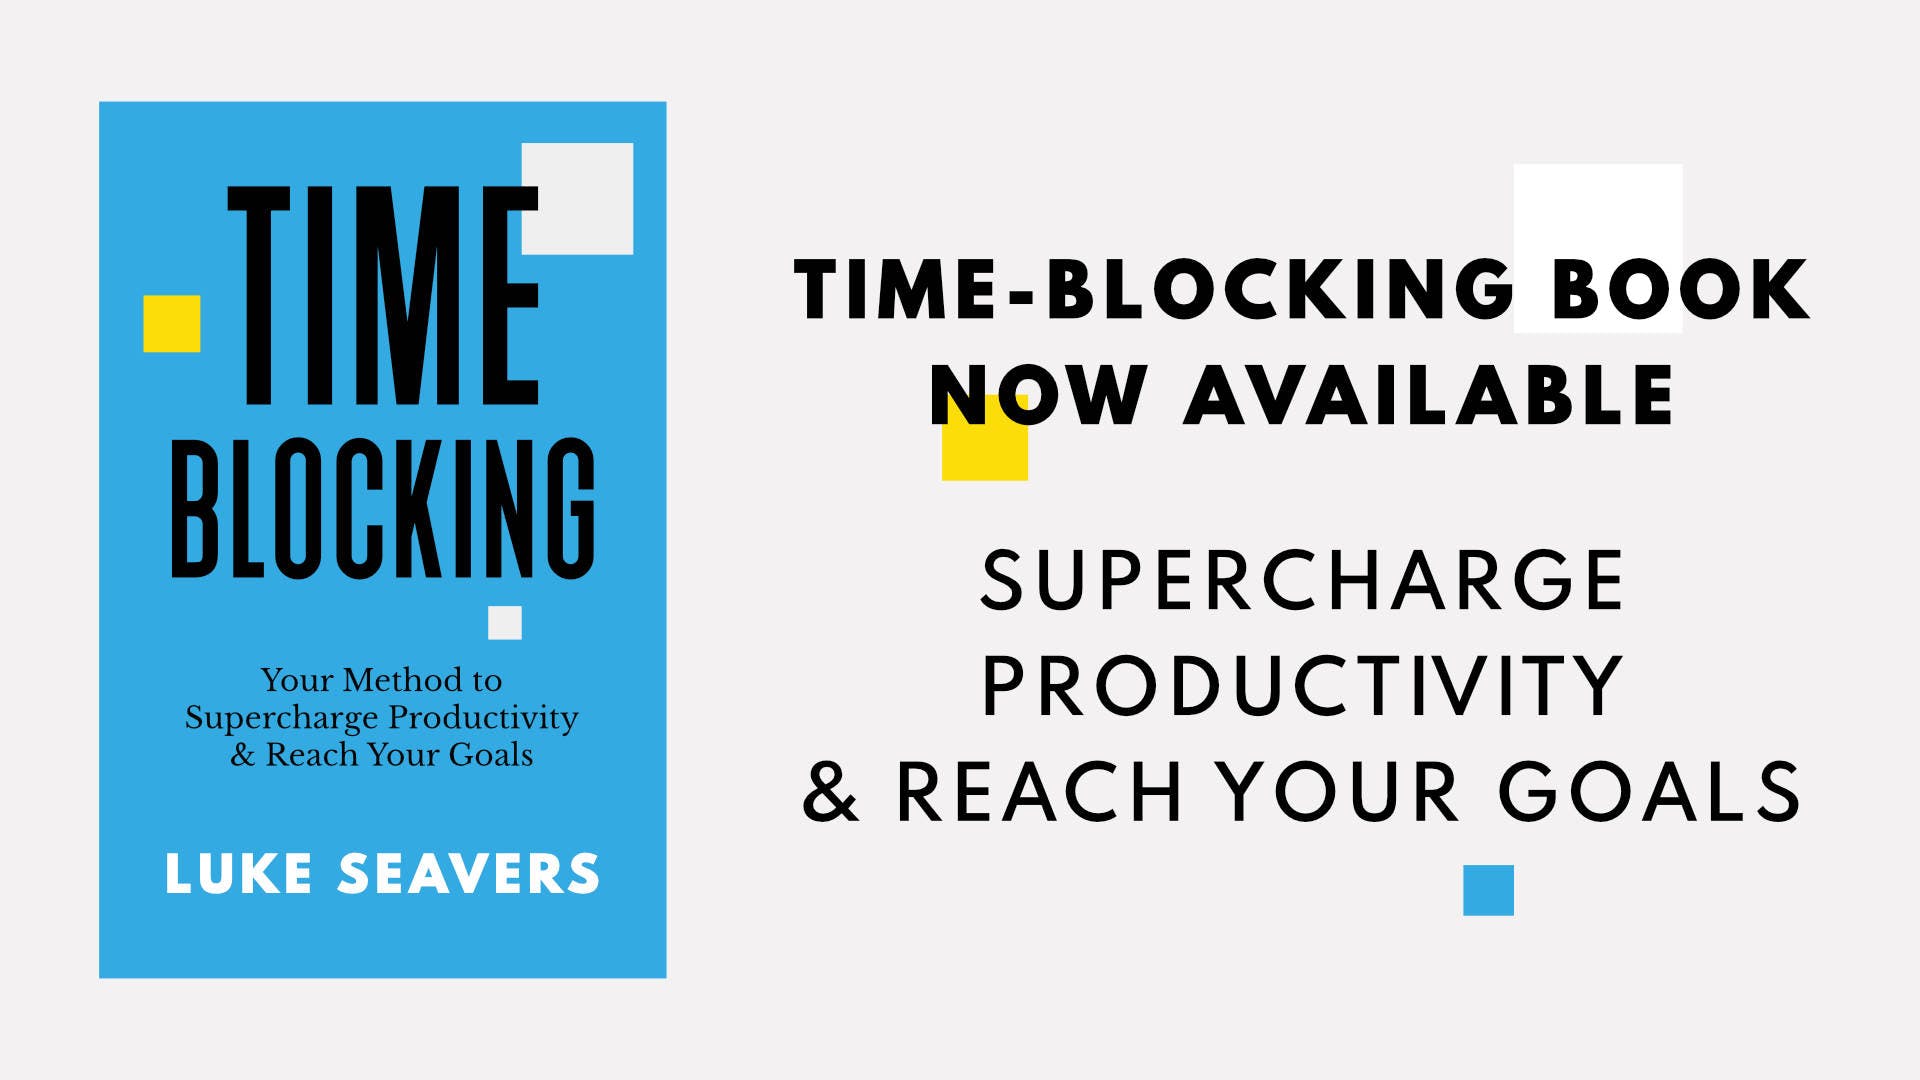 Time-Blocking (book) media 1